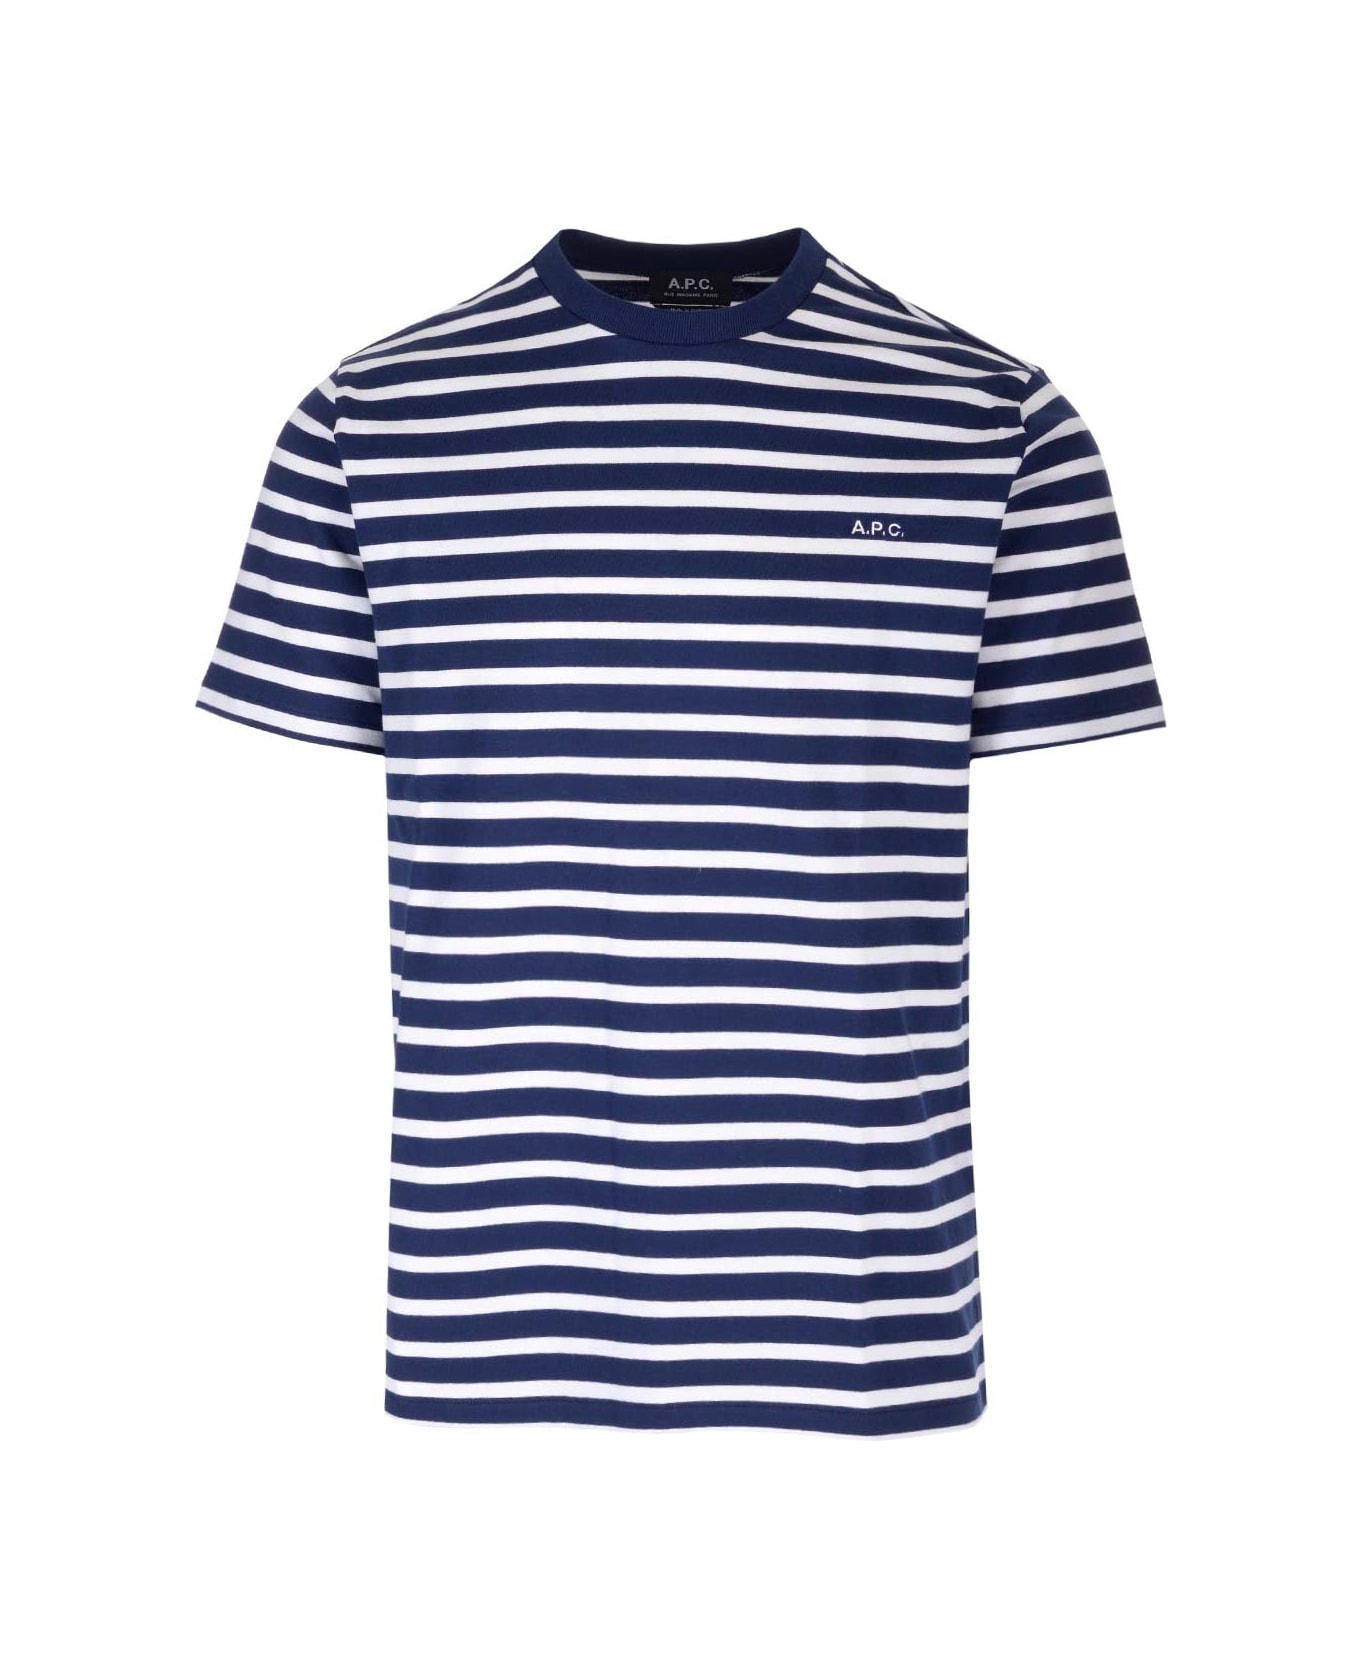 A.P.C. Emilien Striped T-shirt - blue